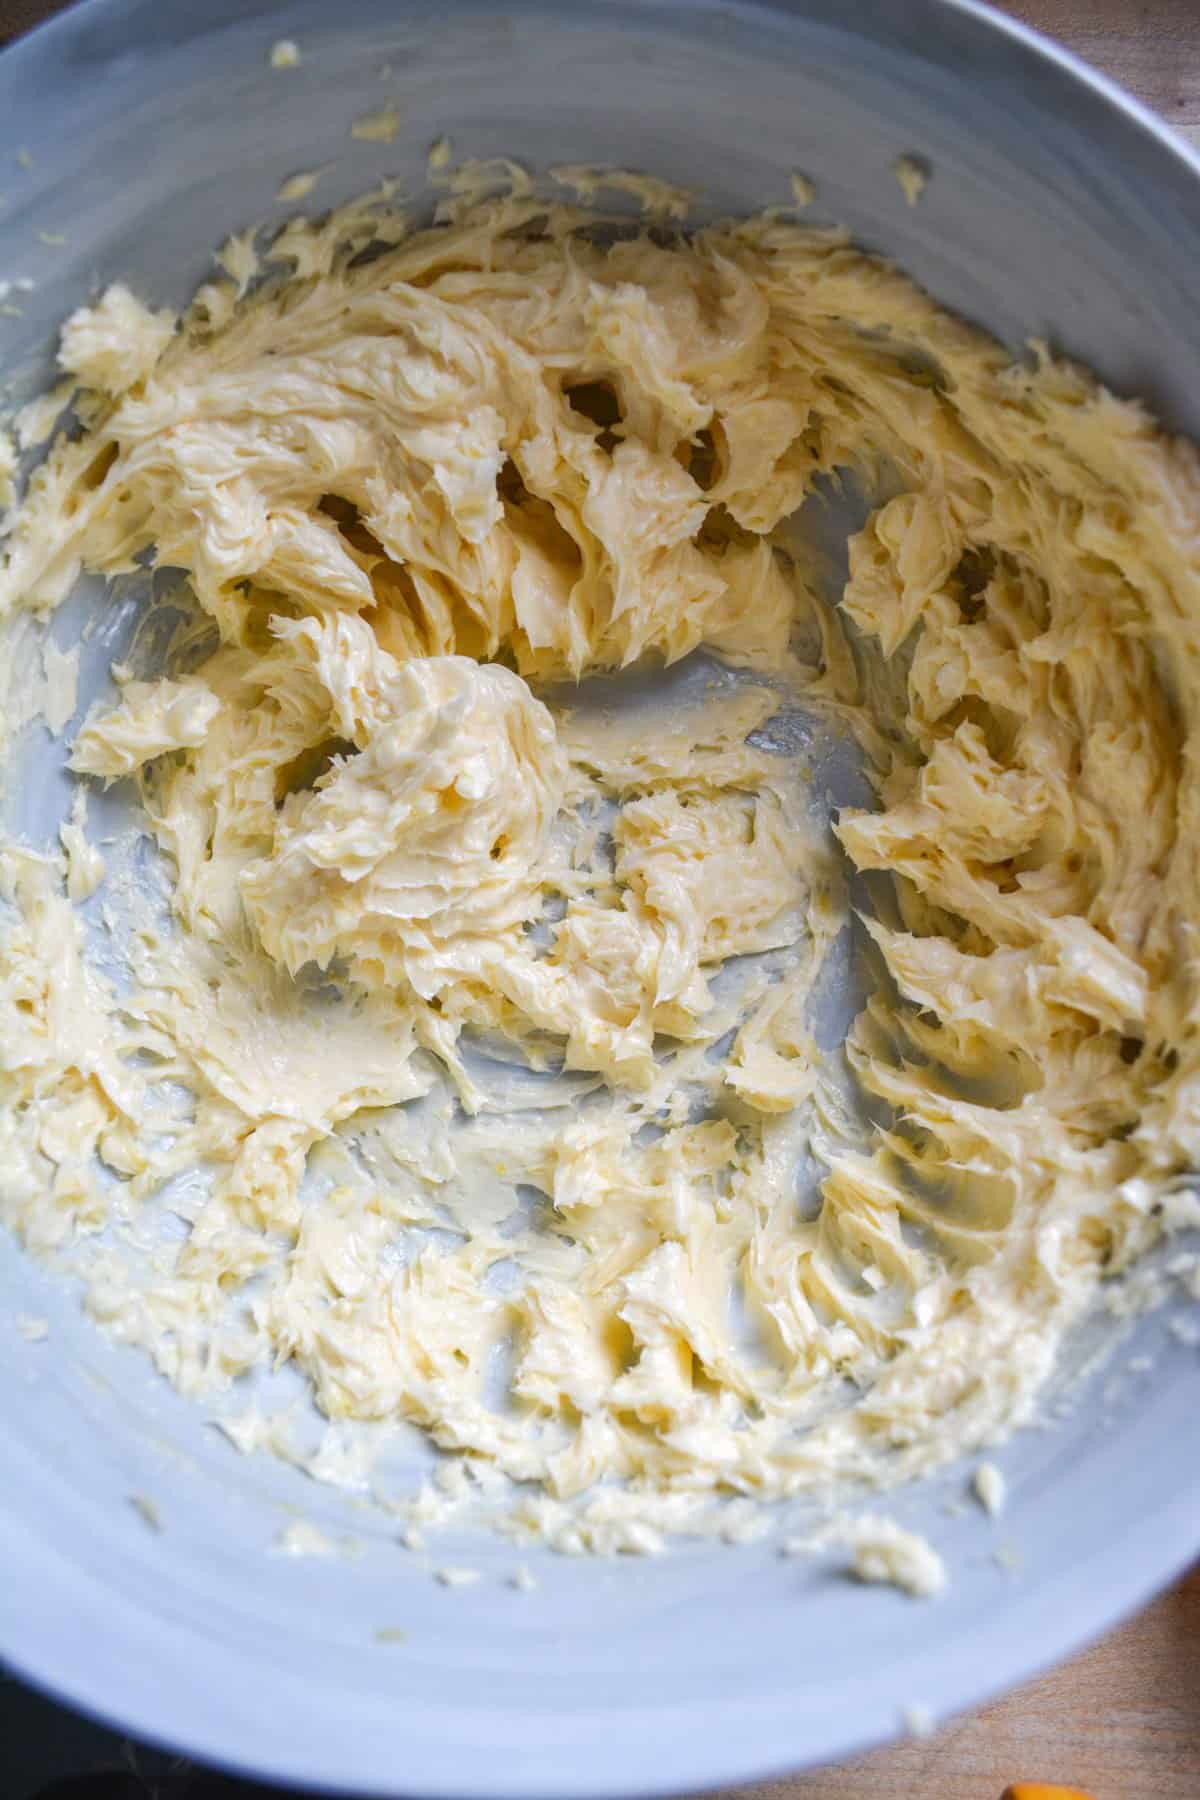 Vegan butter and lemon zest creamed together in a large bowl.